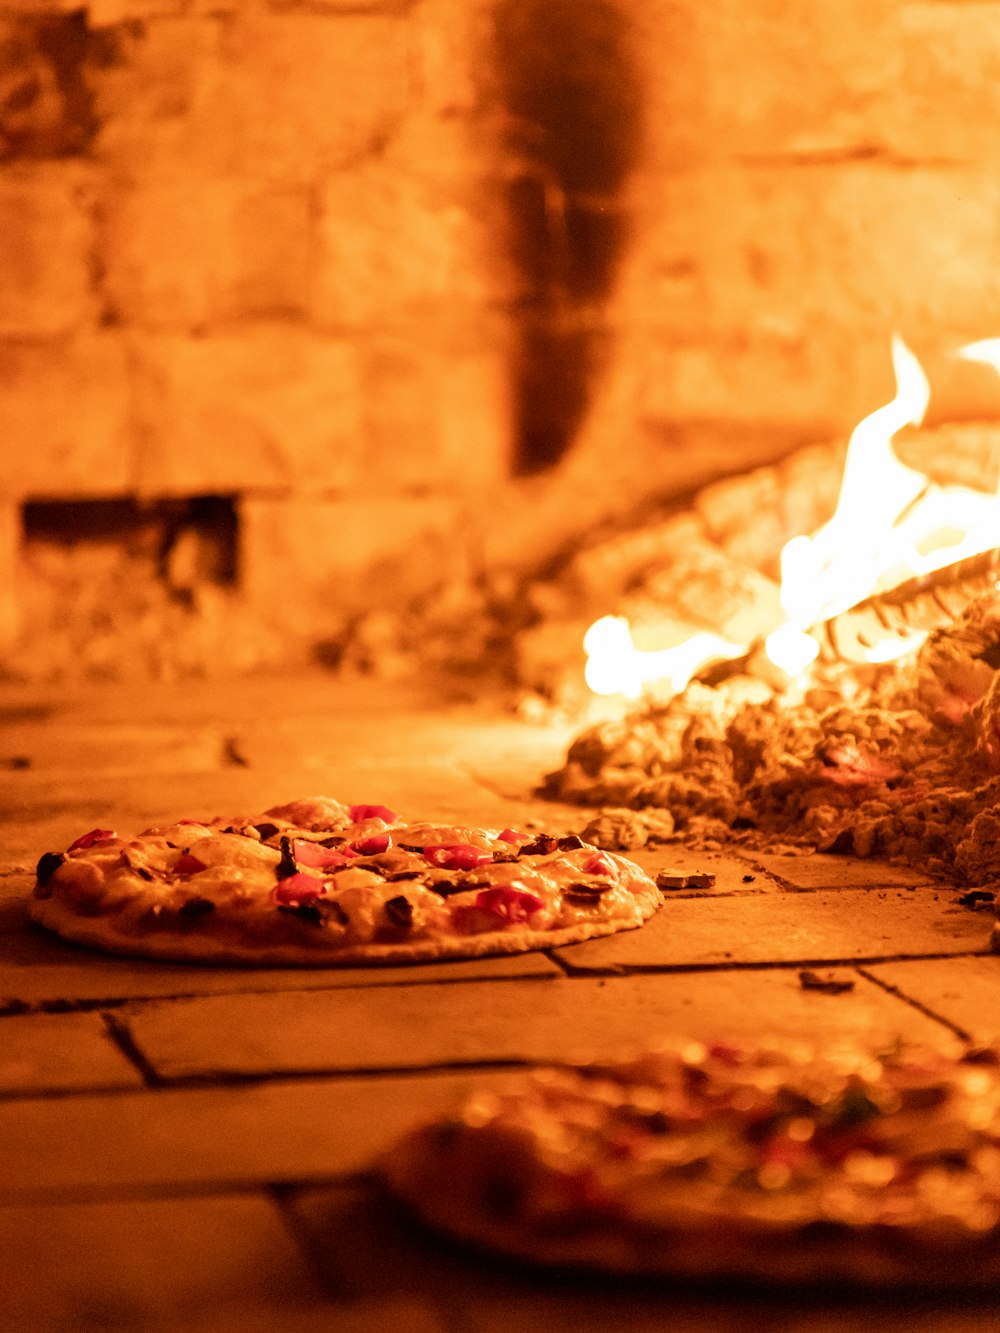 불 앞에 바닥에 앉아 있는 피자 두 개